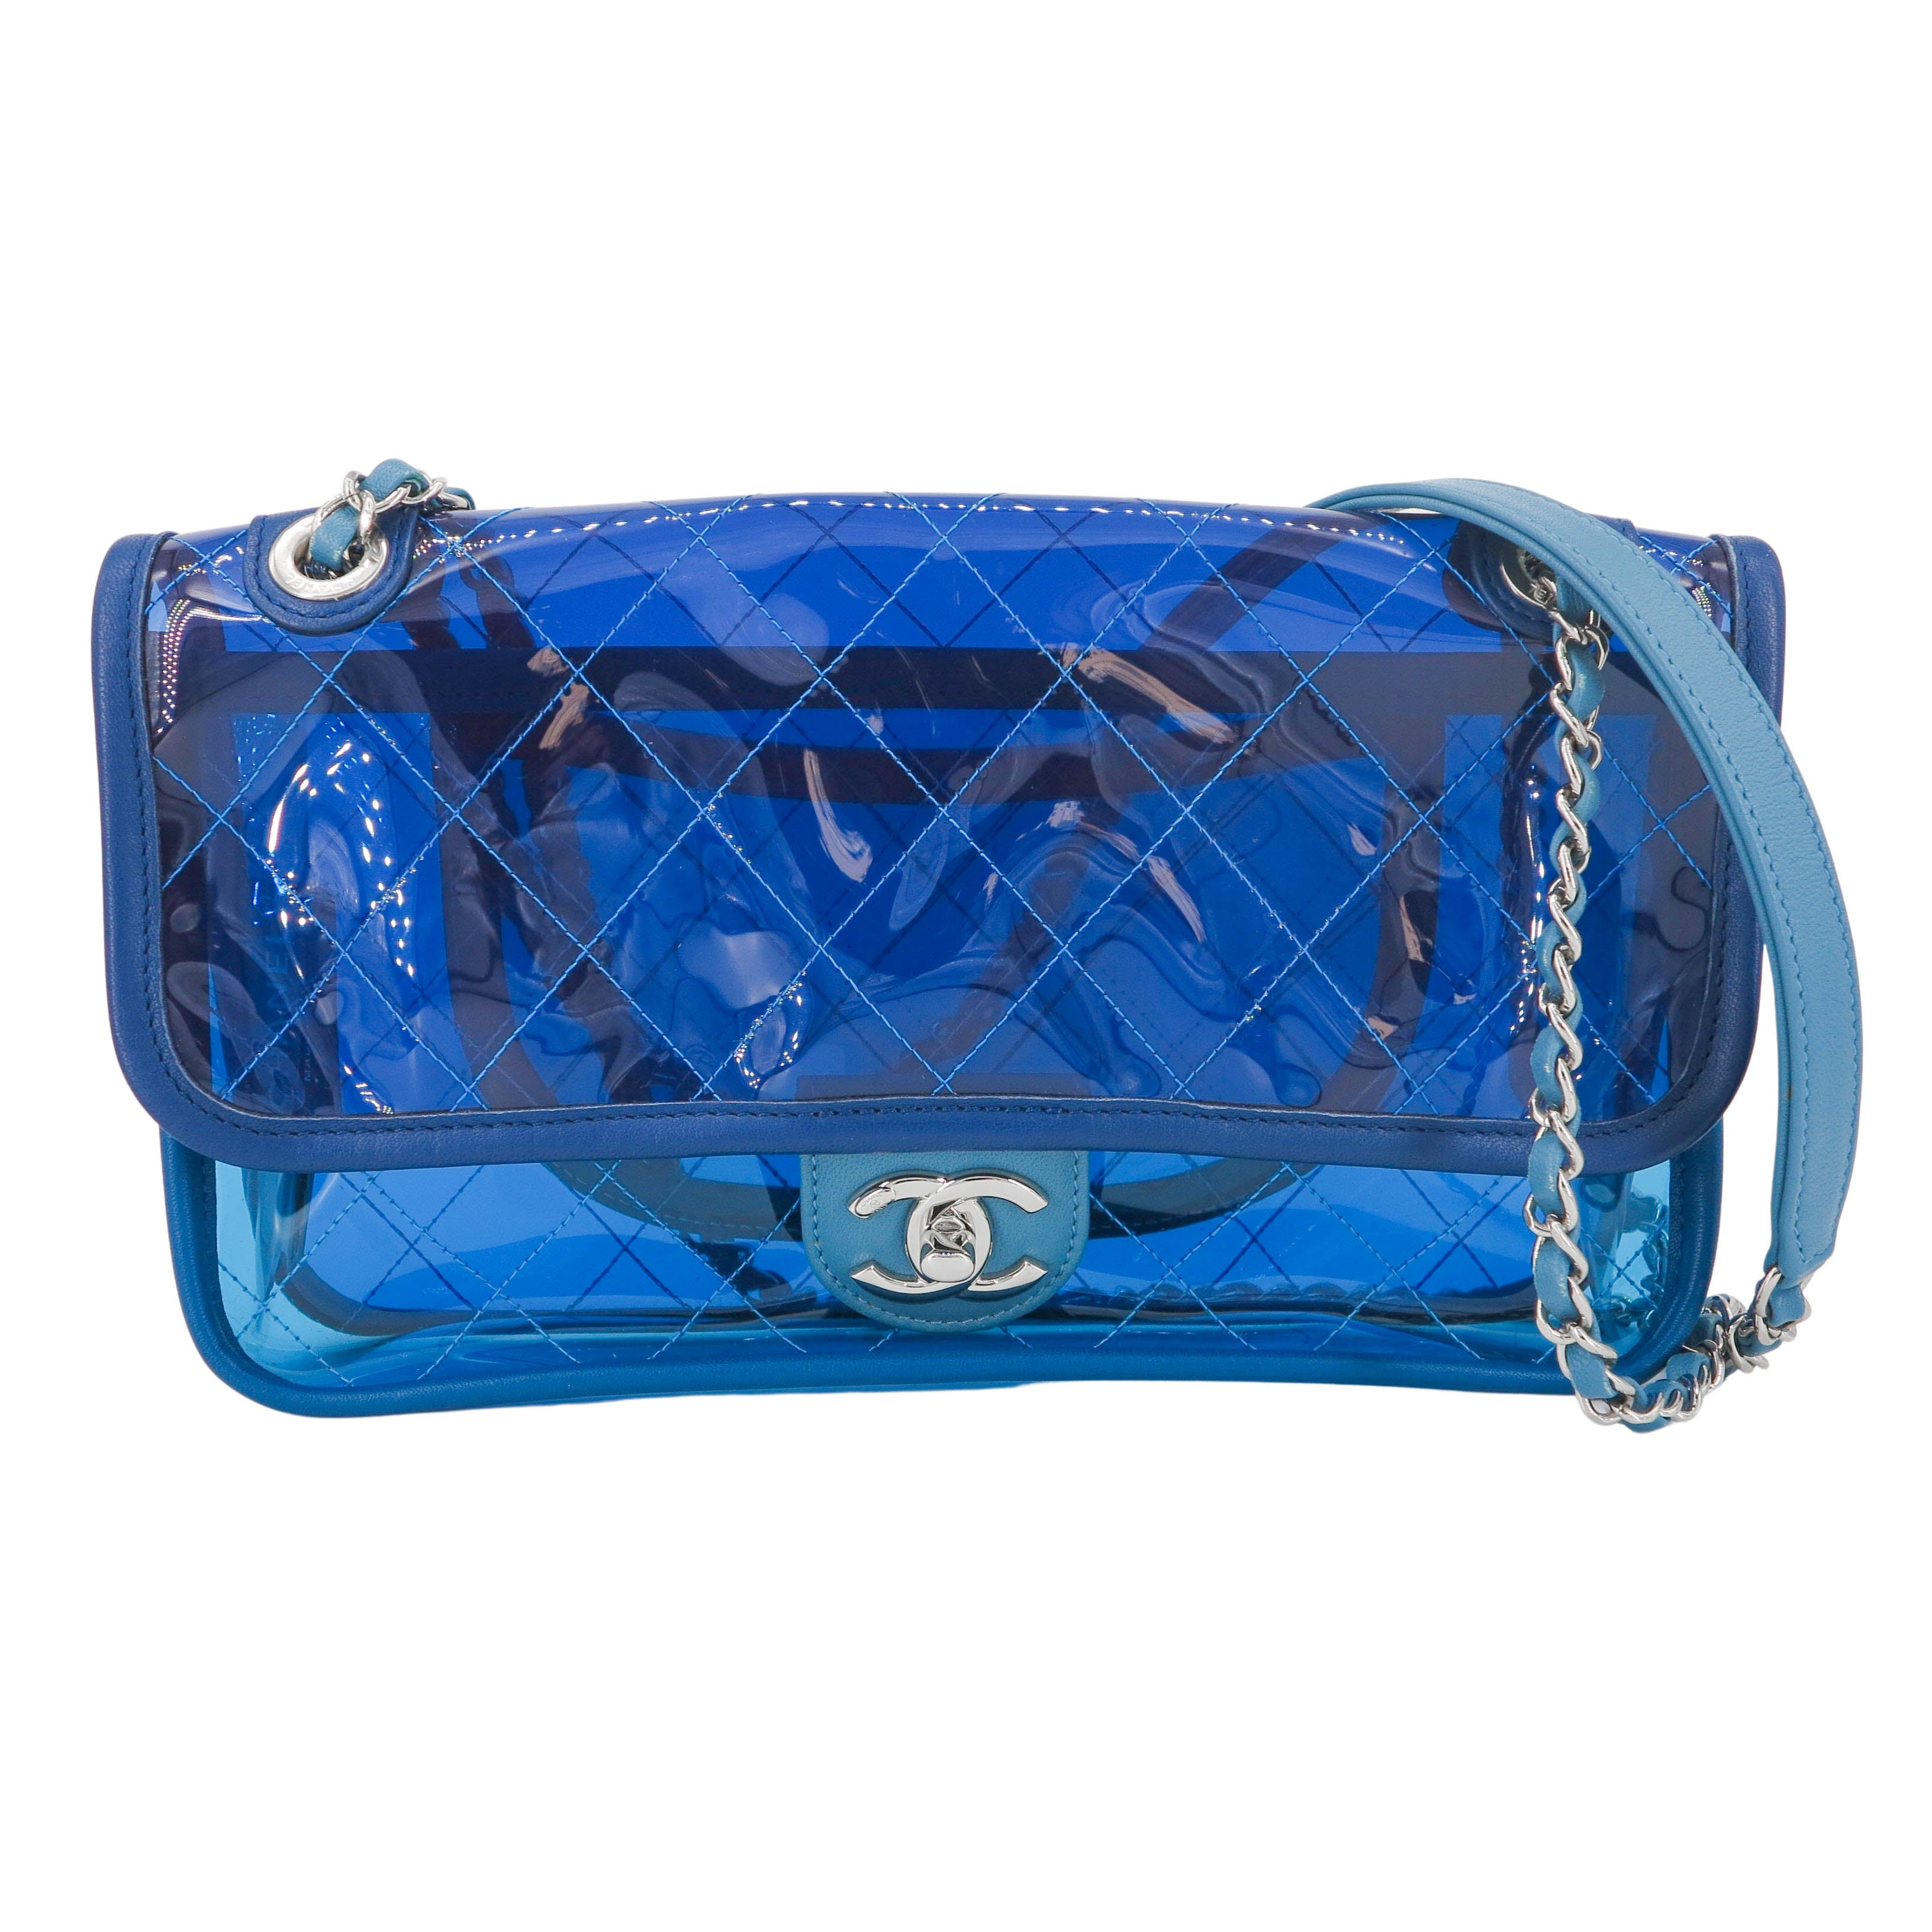 Handbag Chanel Blue in Plastic - 33800777